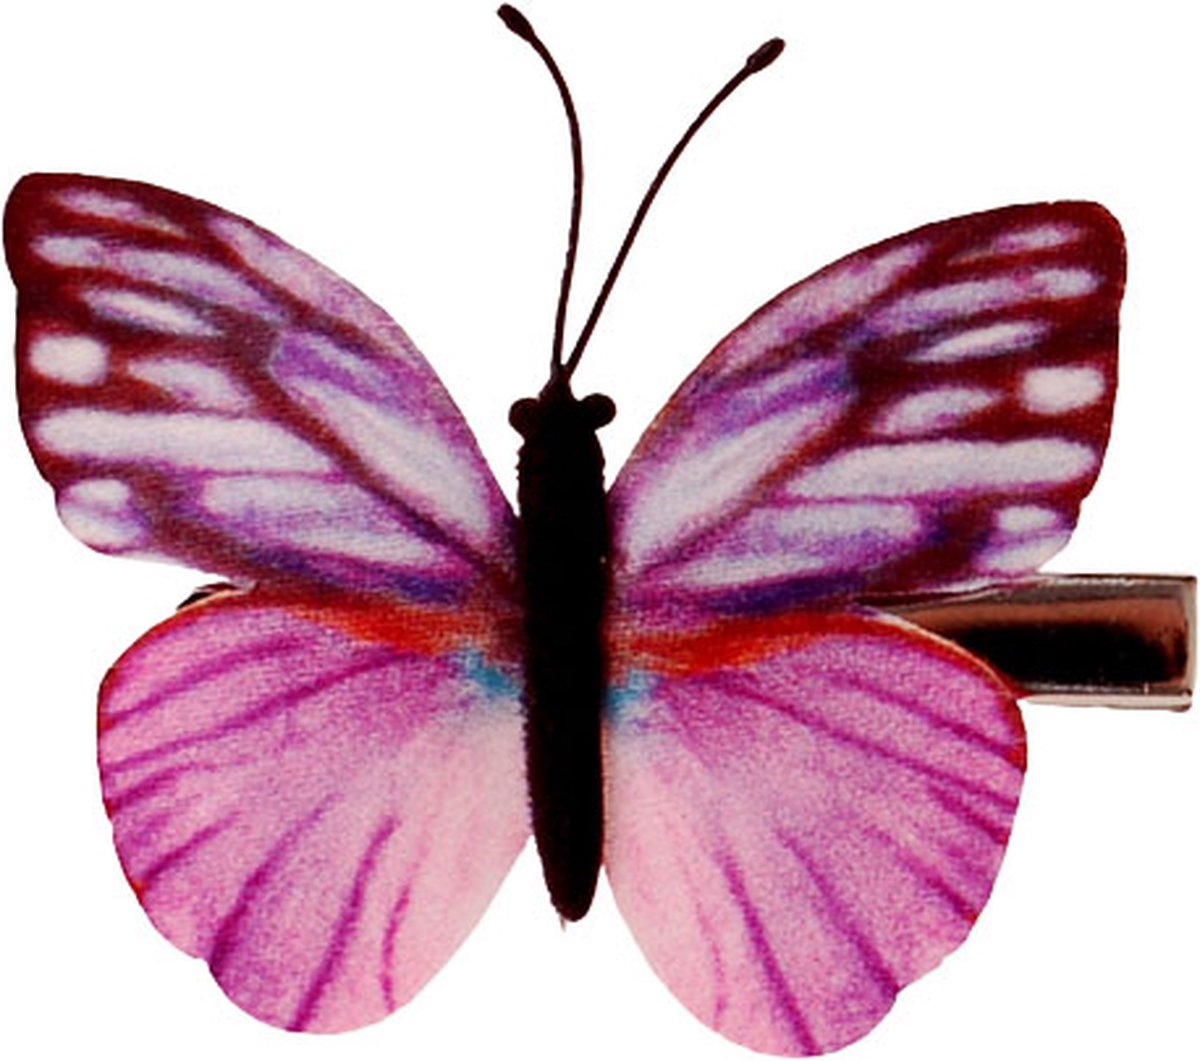 Haarclip vlinder roze/lila - 6 cm